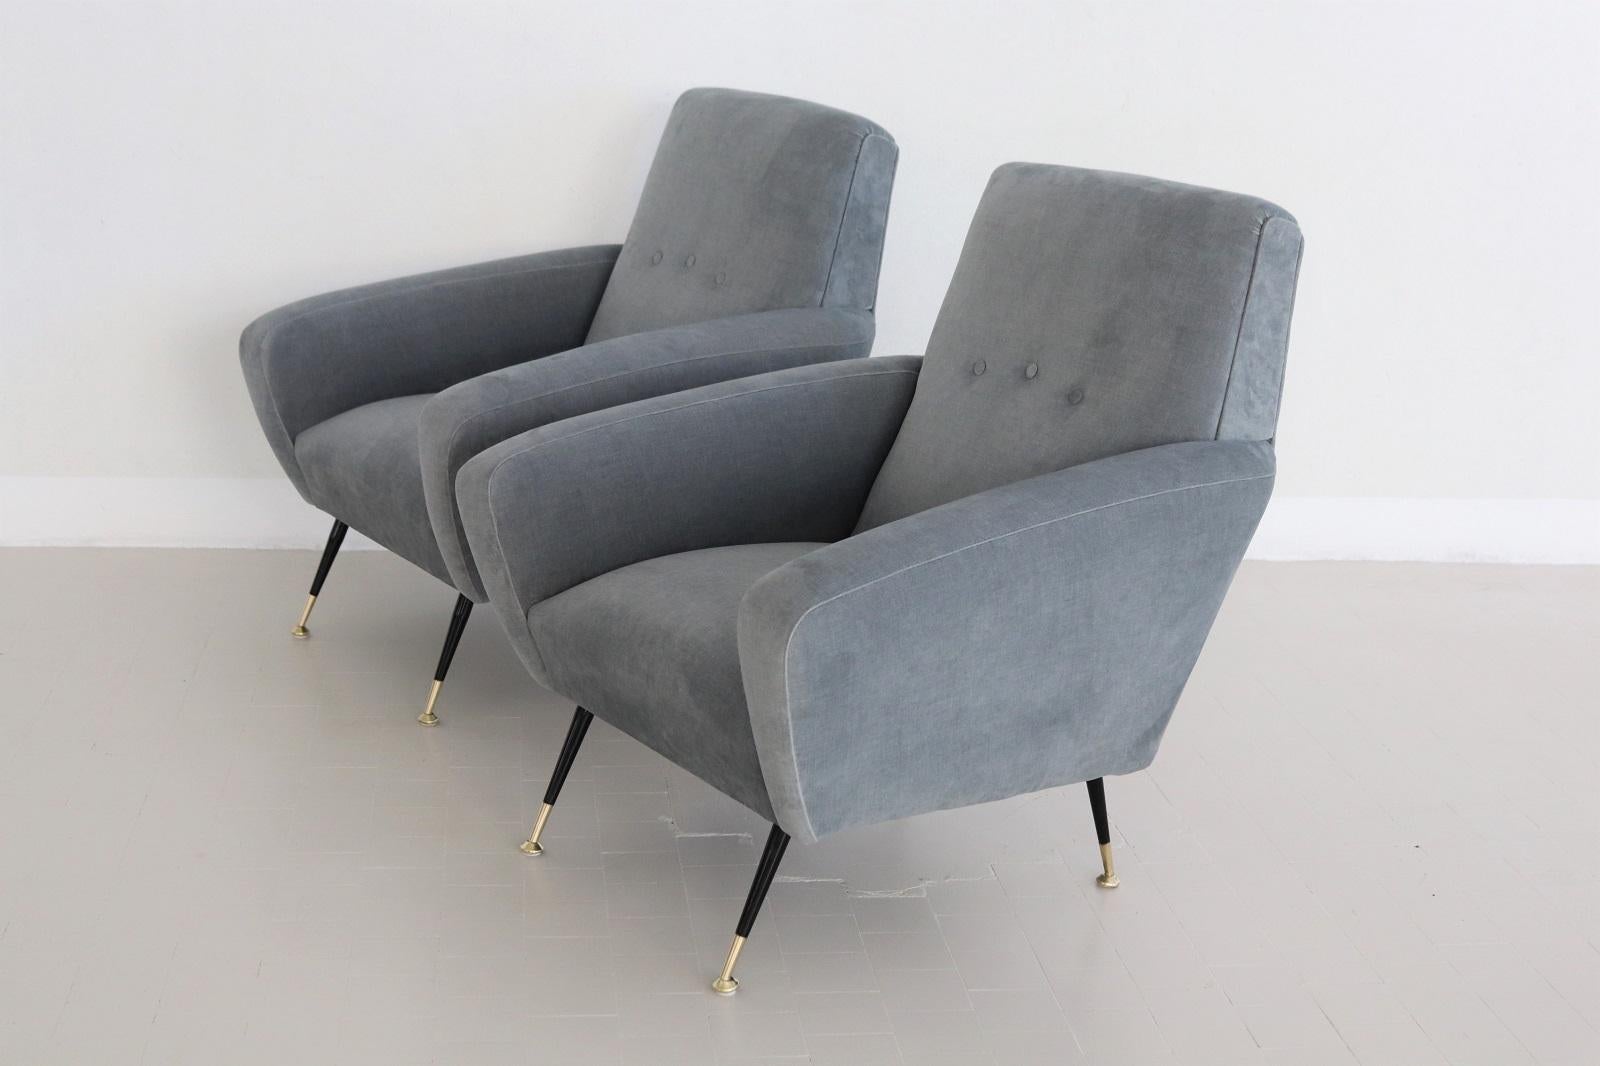 Wunderschönes Paar original italienischer Sessel mit Messingspitzen aus der Mitte des Jahrhunderts, 1950er Jahre.
Die Sessel sind im Inneren mit Federn ausgestattet, die für einen weichen und federnden Sitzkomfort von hoher Qualität sorgen.
Komplett